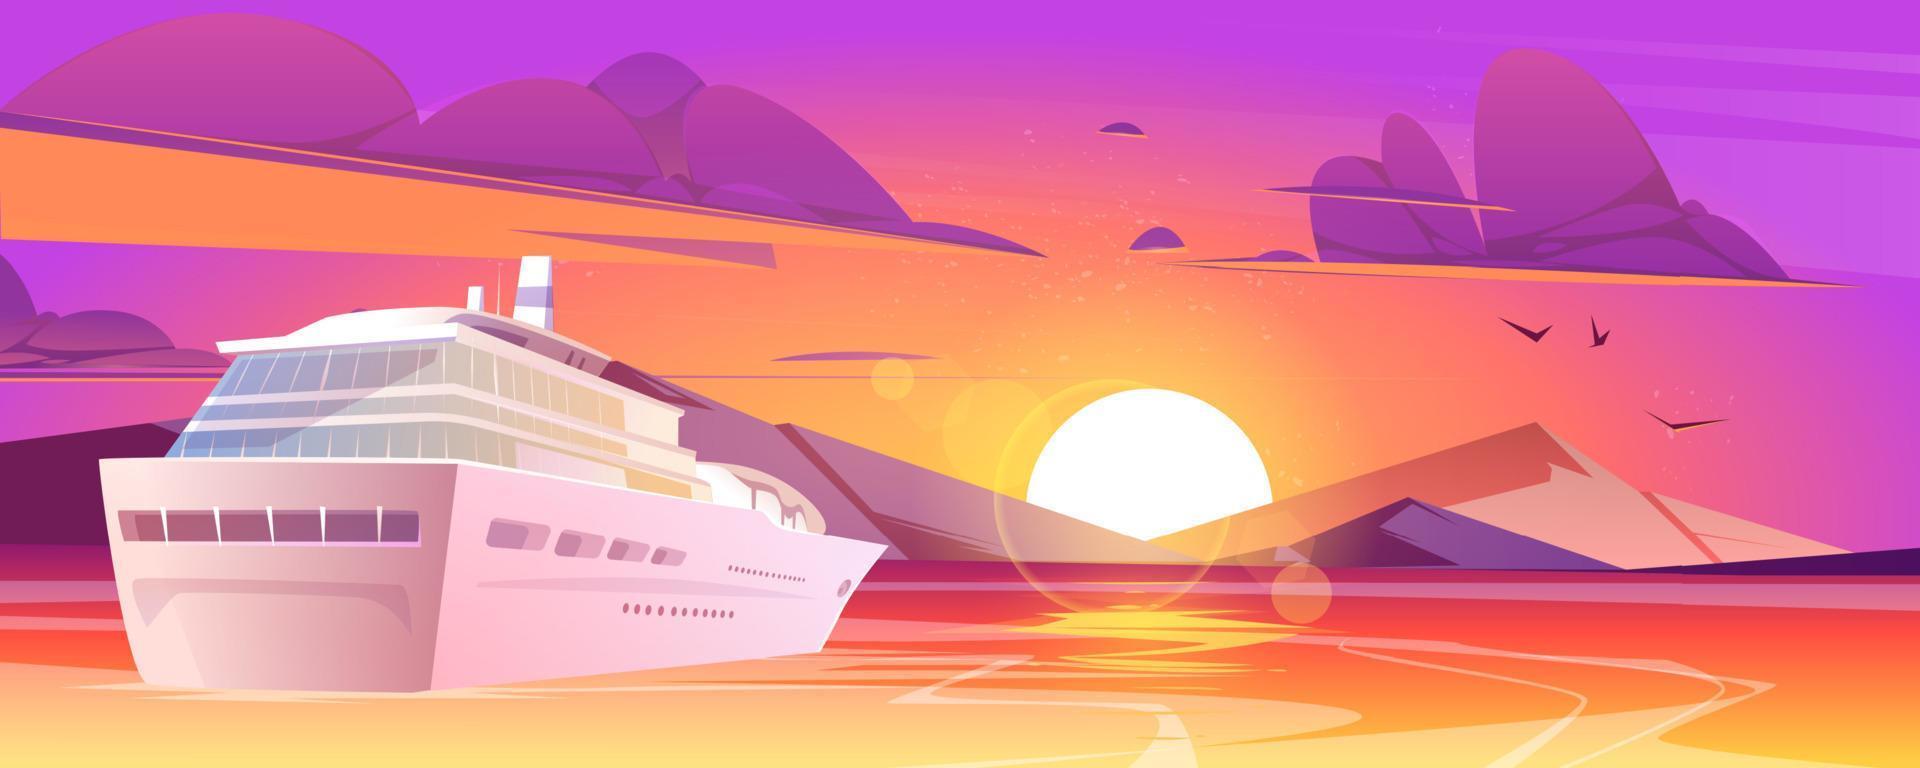 crociera nave nel mare con montagne a tramonto vettore